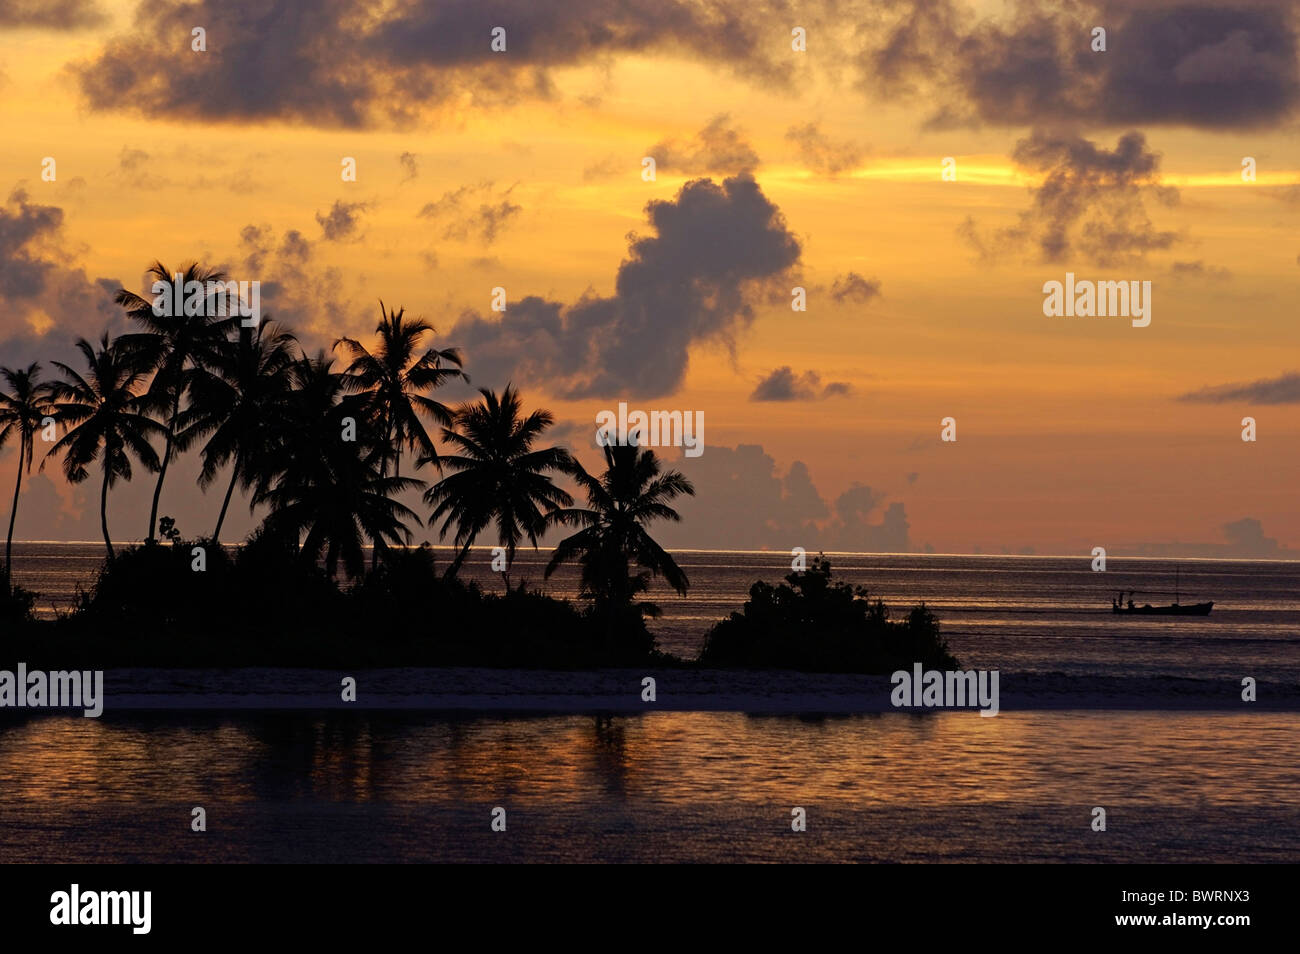 Siluetas de palmeras que bordean la playa al amanecer, Maldivas. Foto de stock